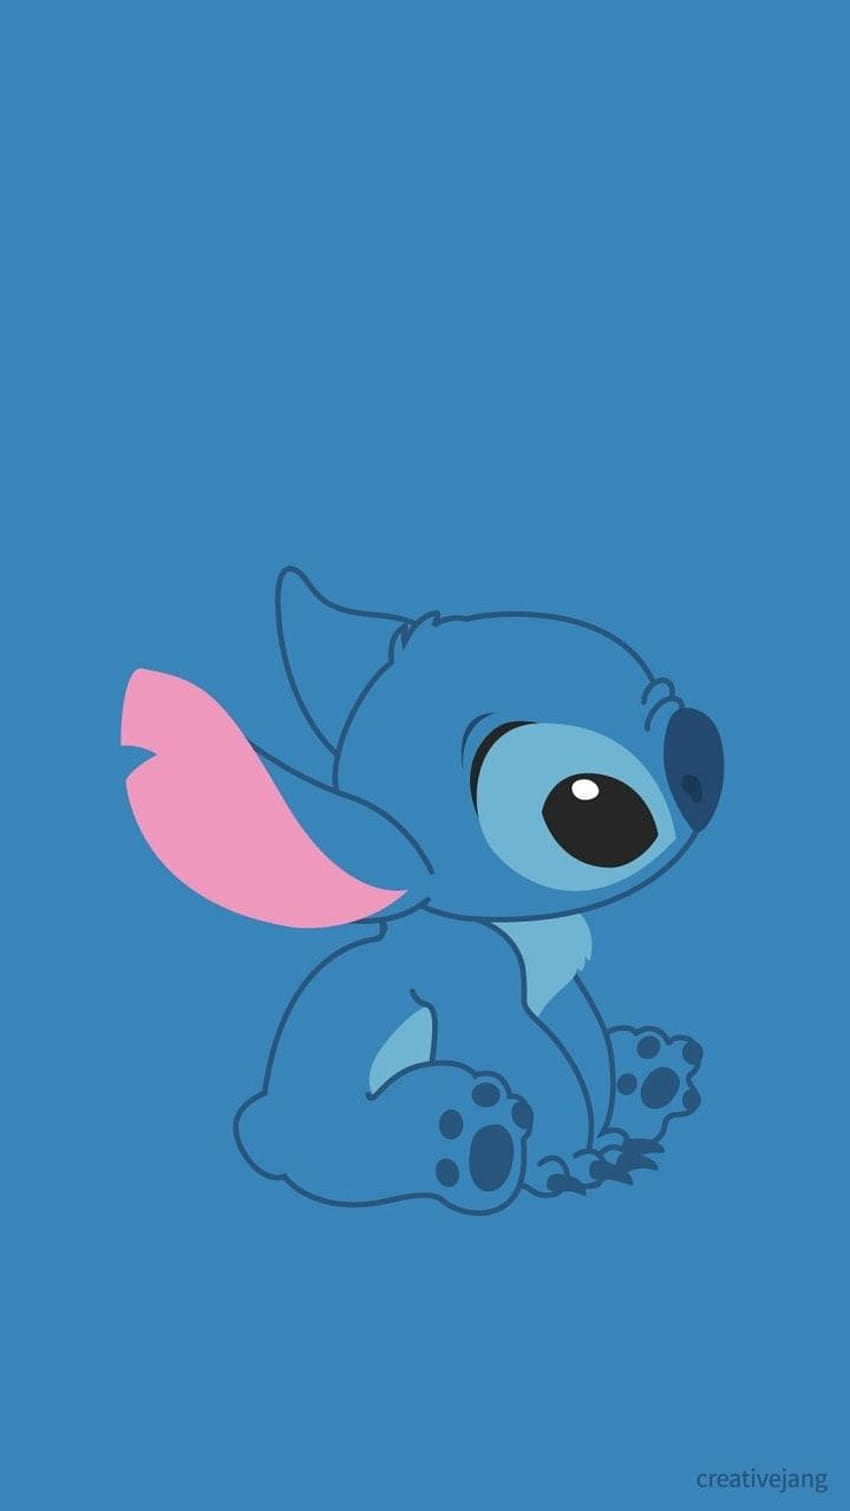 Ver más sobre Stitch, Disney y Cute Kawaii Stitch fondo de pantalla del teléfono